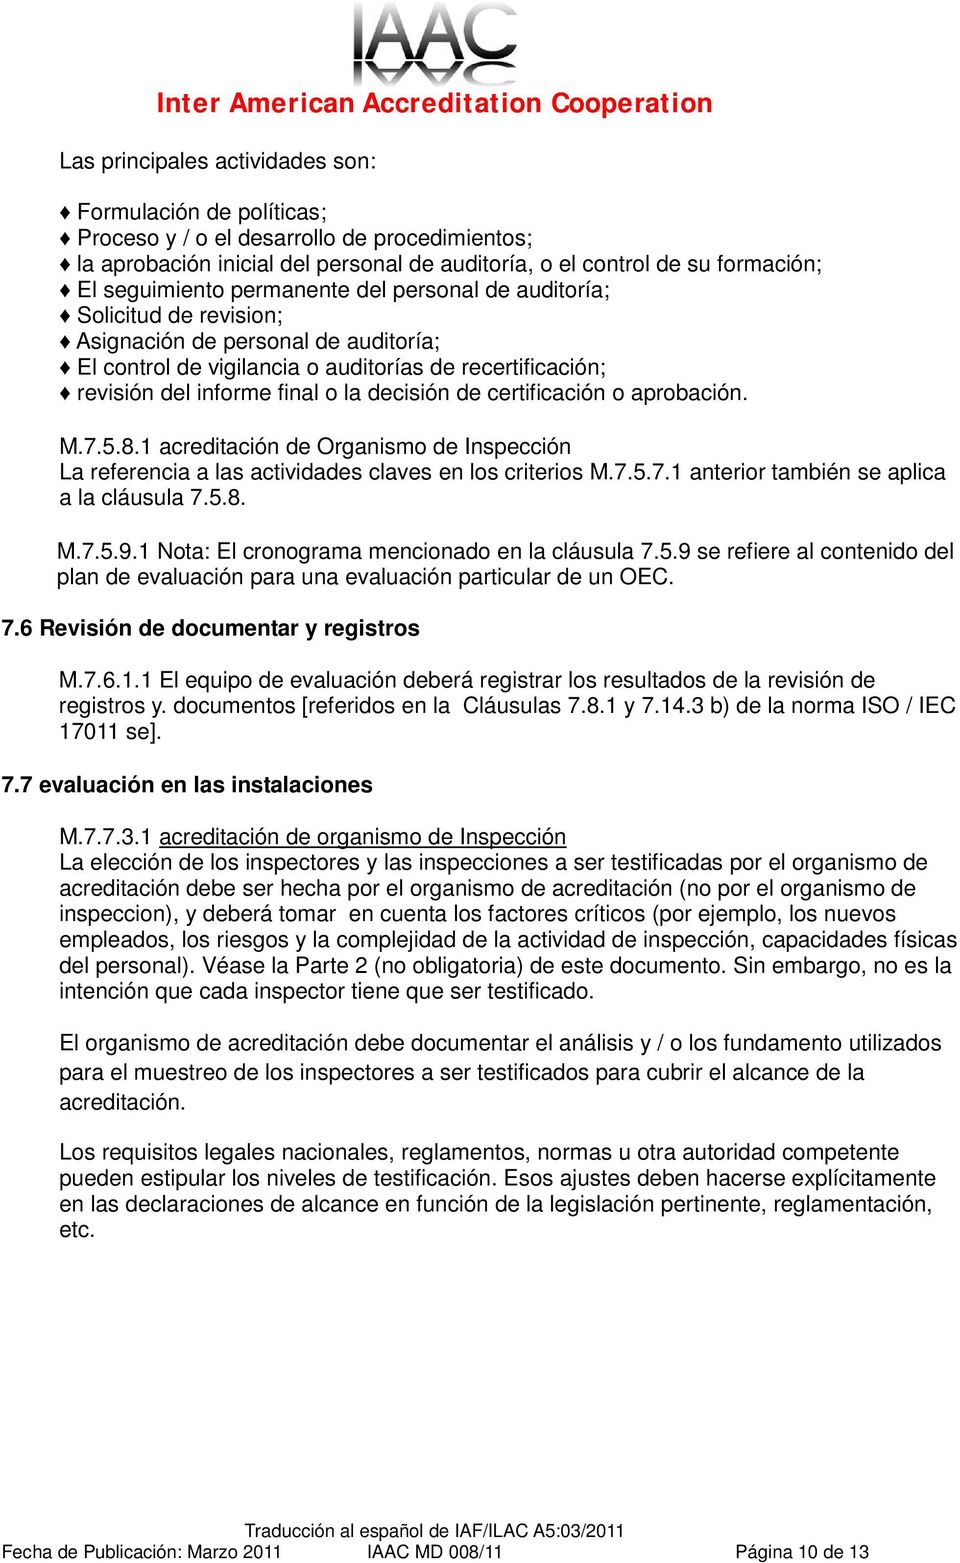 certificación o aprobación. M.7.5.8.1 acreditación de Organismo de Inspección La referencia a las actividades claves en los criterios M.7.5.7.1 anterior también se aplica a la cláusula 7.5.8. M.7.5.9.